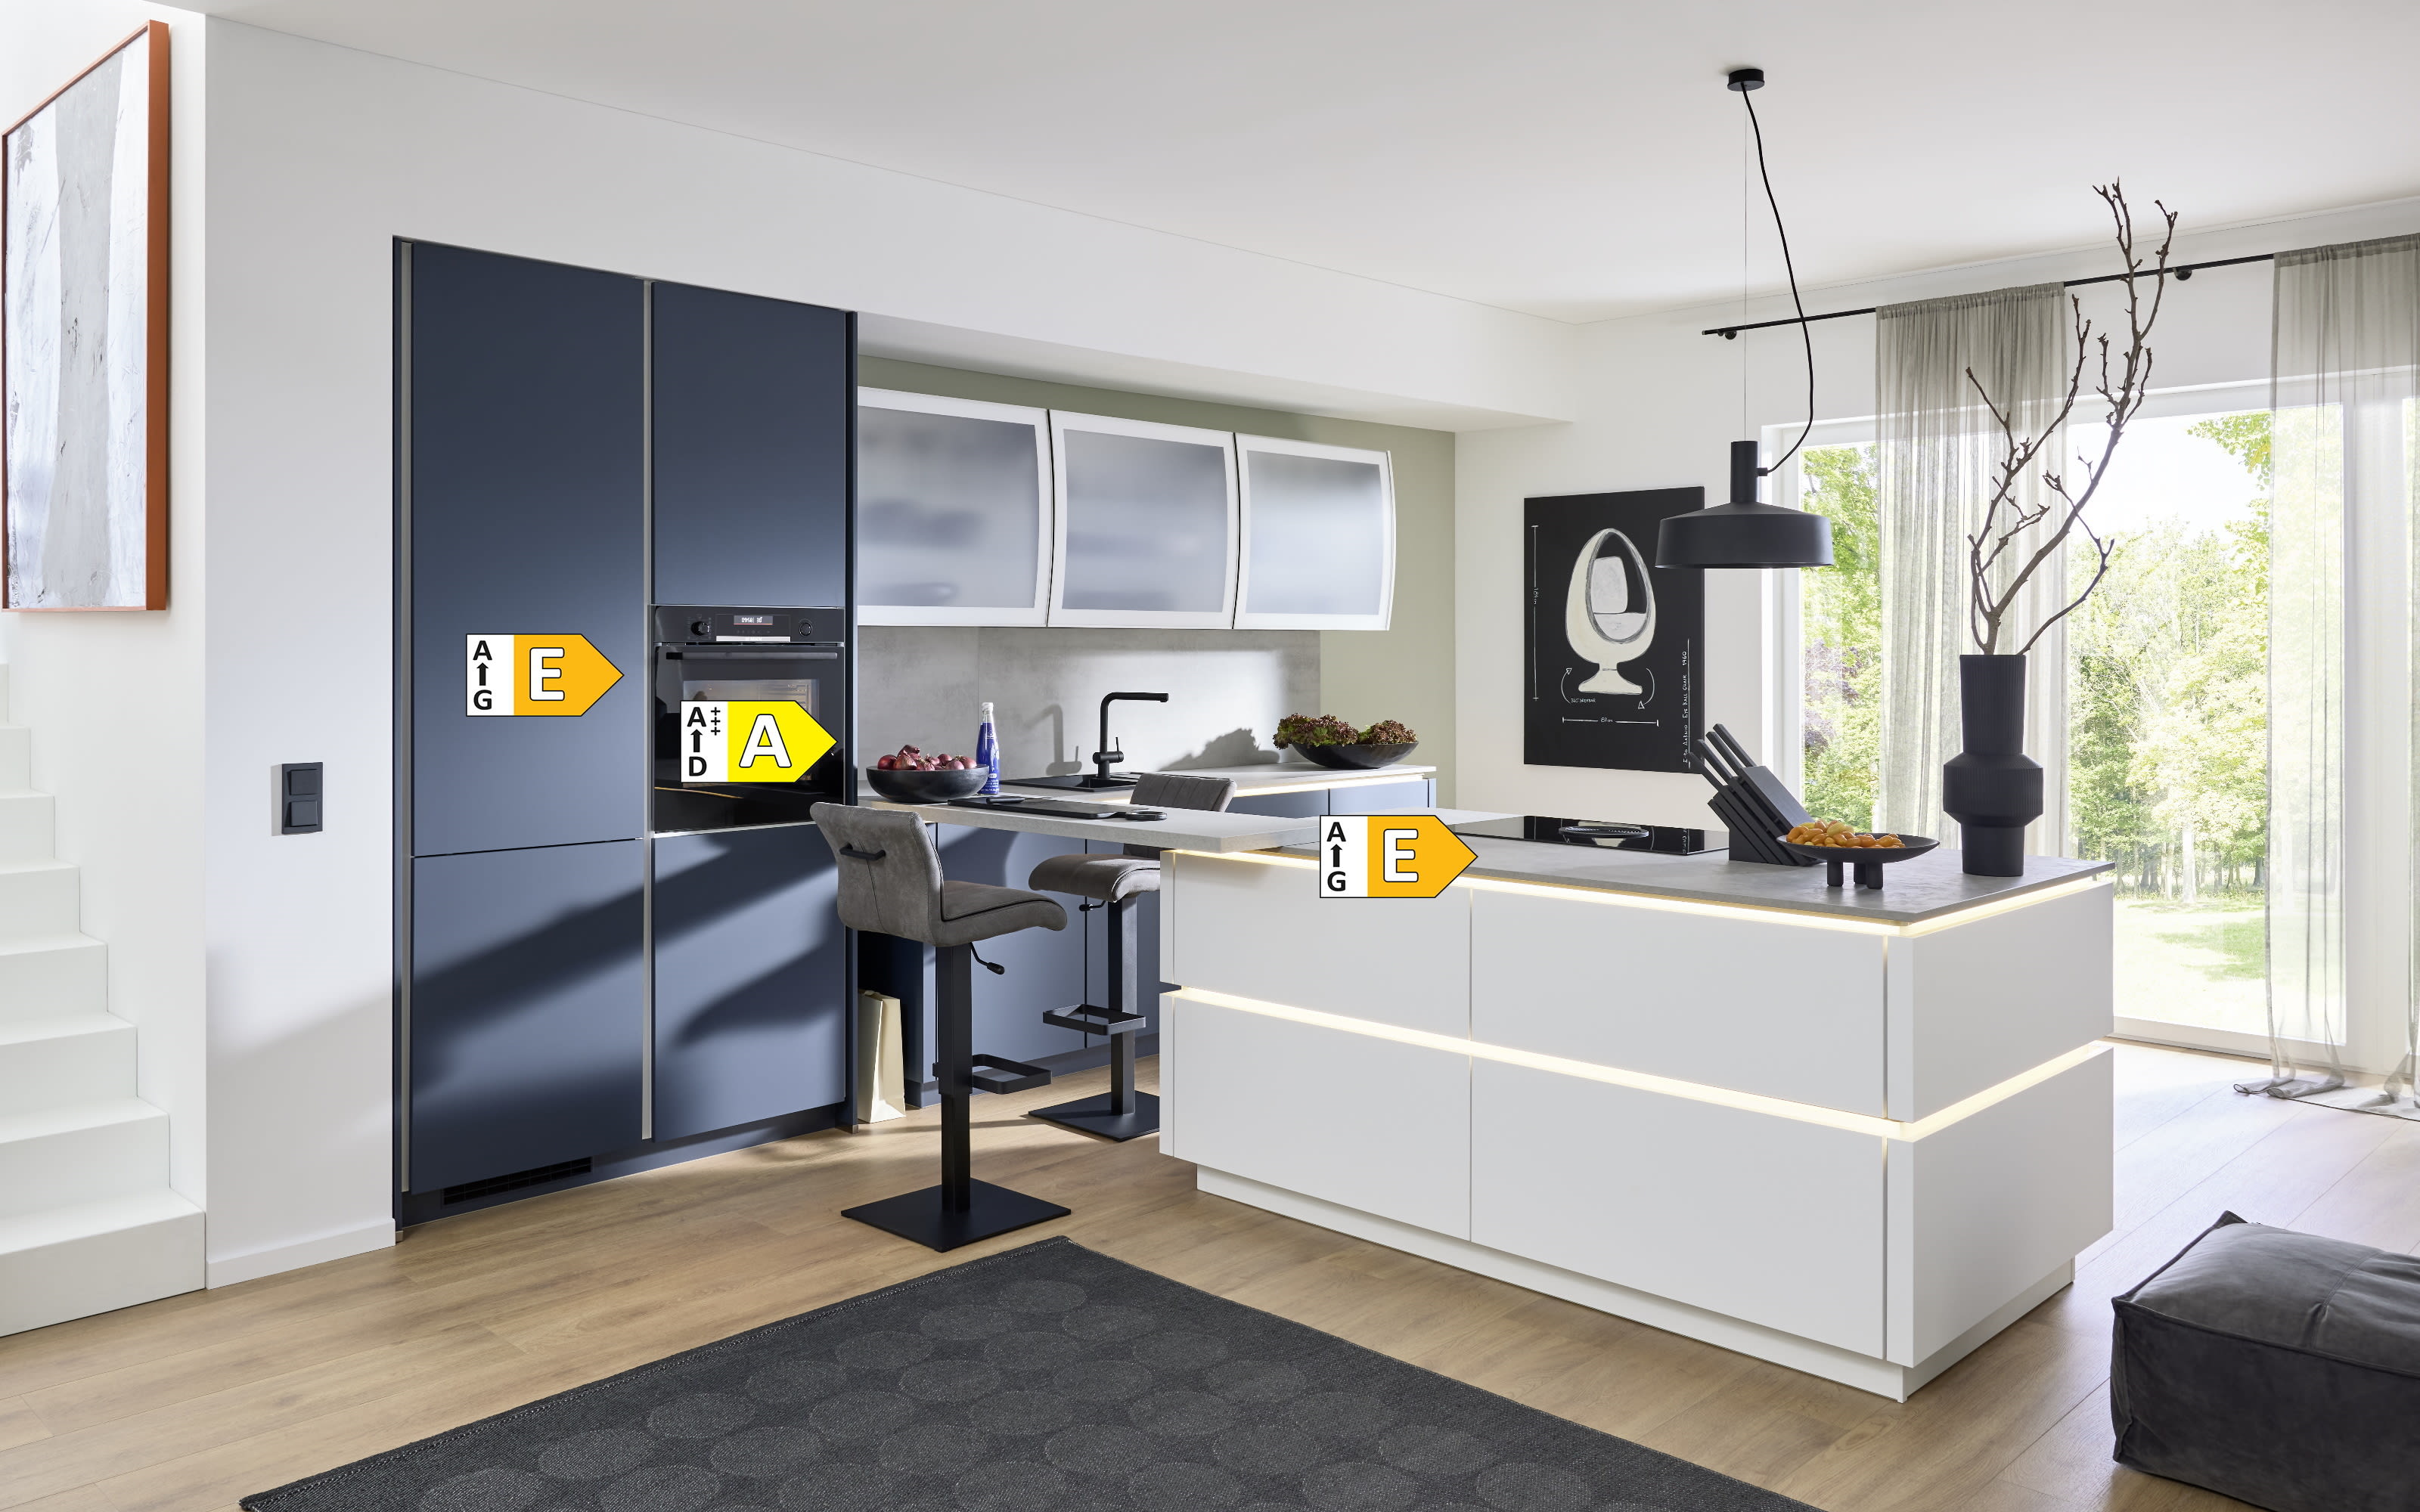 Einbauküche Esilia, weiß matt/fjordblau, inkl. Siemens Elektrogeräte